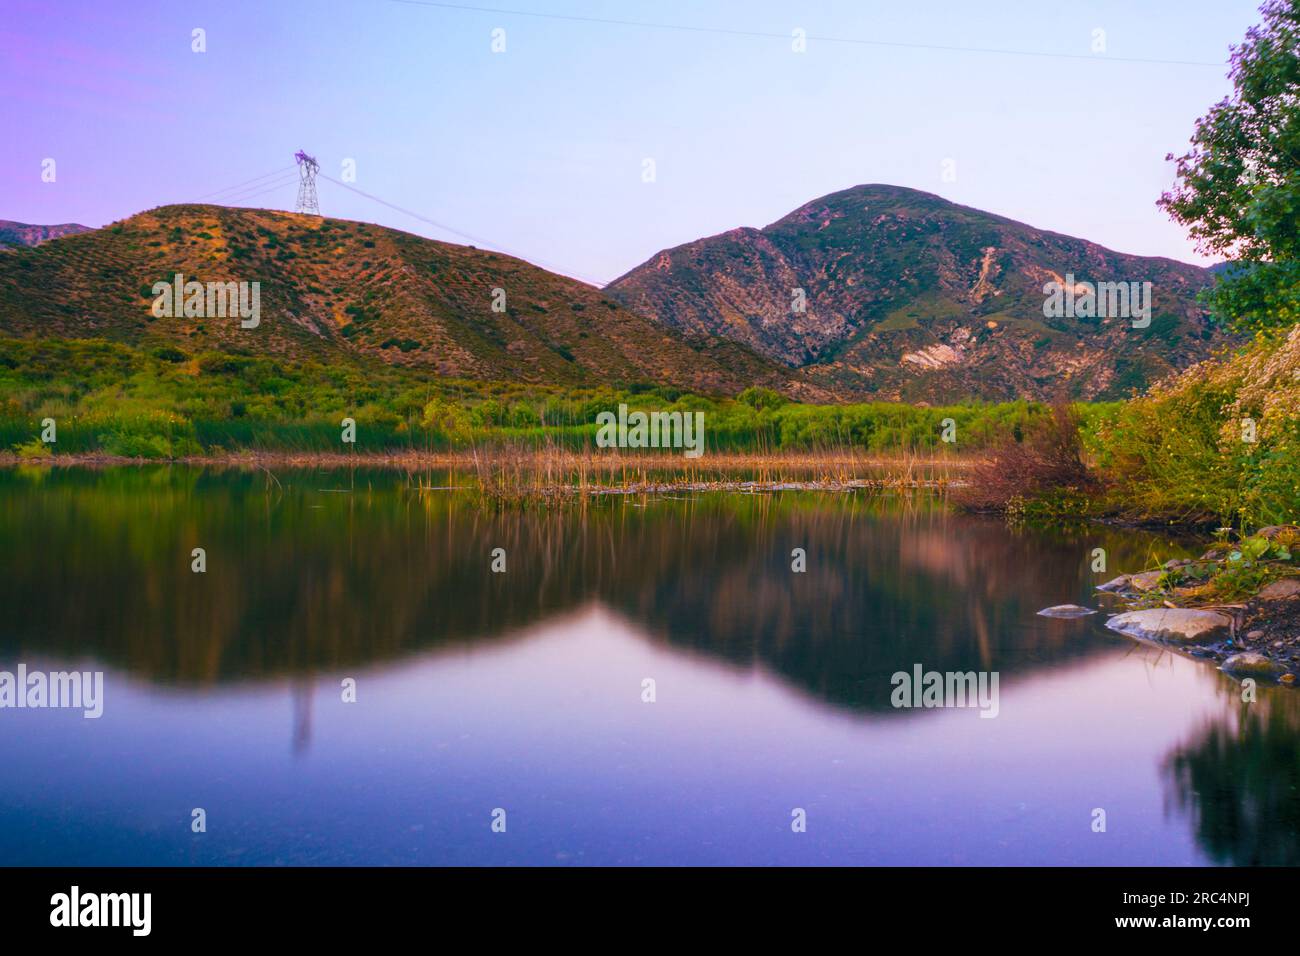 Immergiti nella tranquillità, mentre Lost Lake riflette le affascinanti montagne di San Bernardino e la drammatica faglia di San Andreas all'ora d'oro Foto Stock